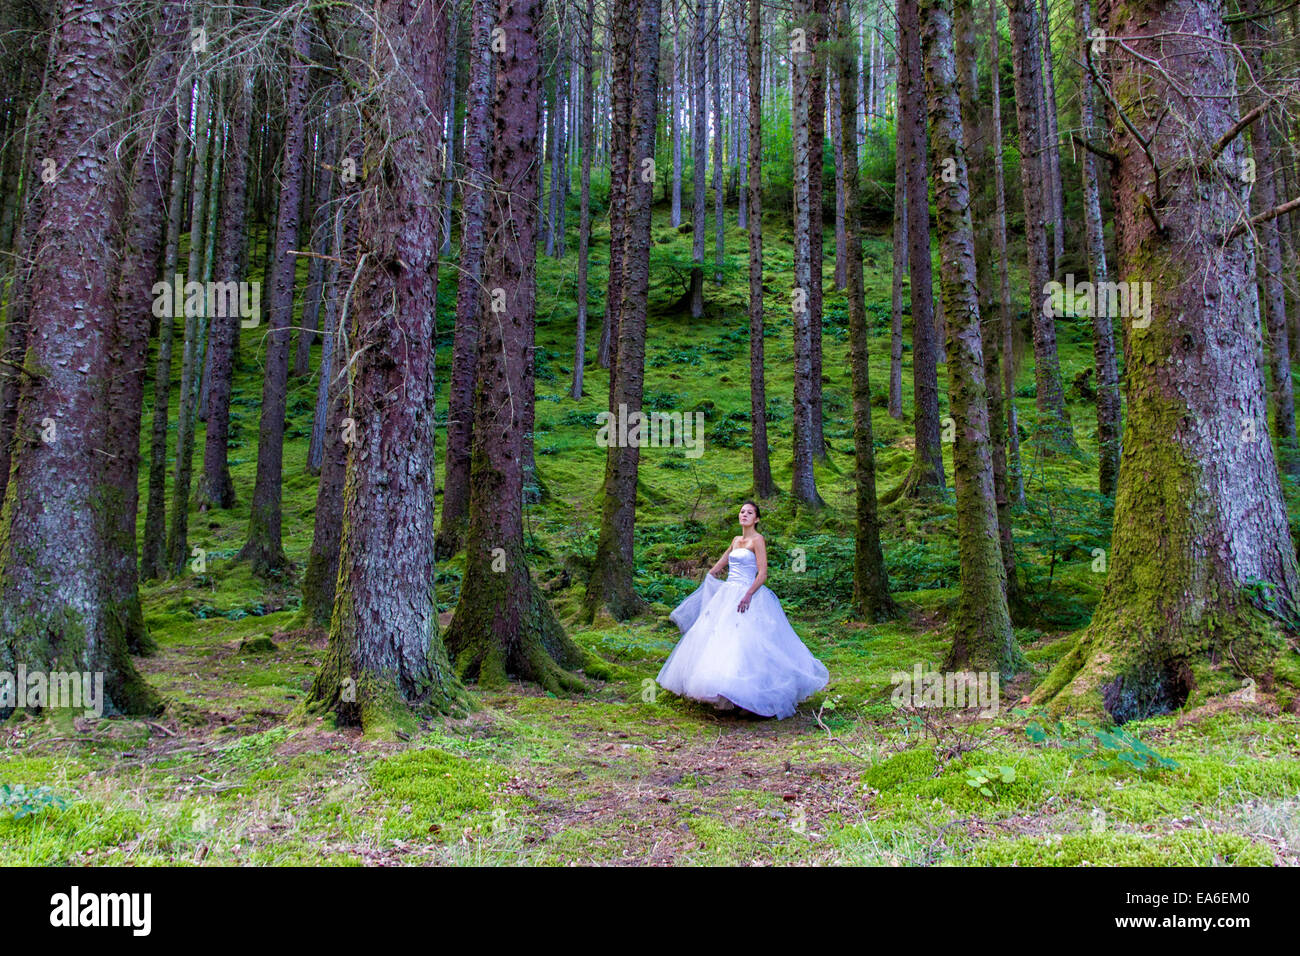 Germany/Deutschland, Frauen in Hochzeit kleiden sich in Wald Stockfoto